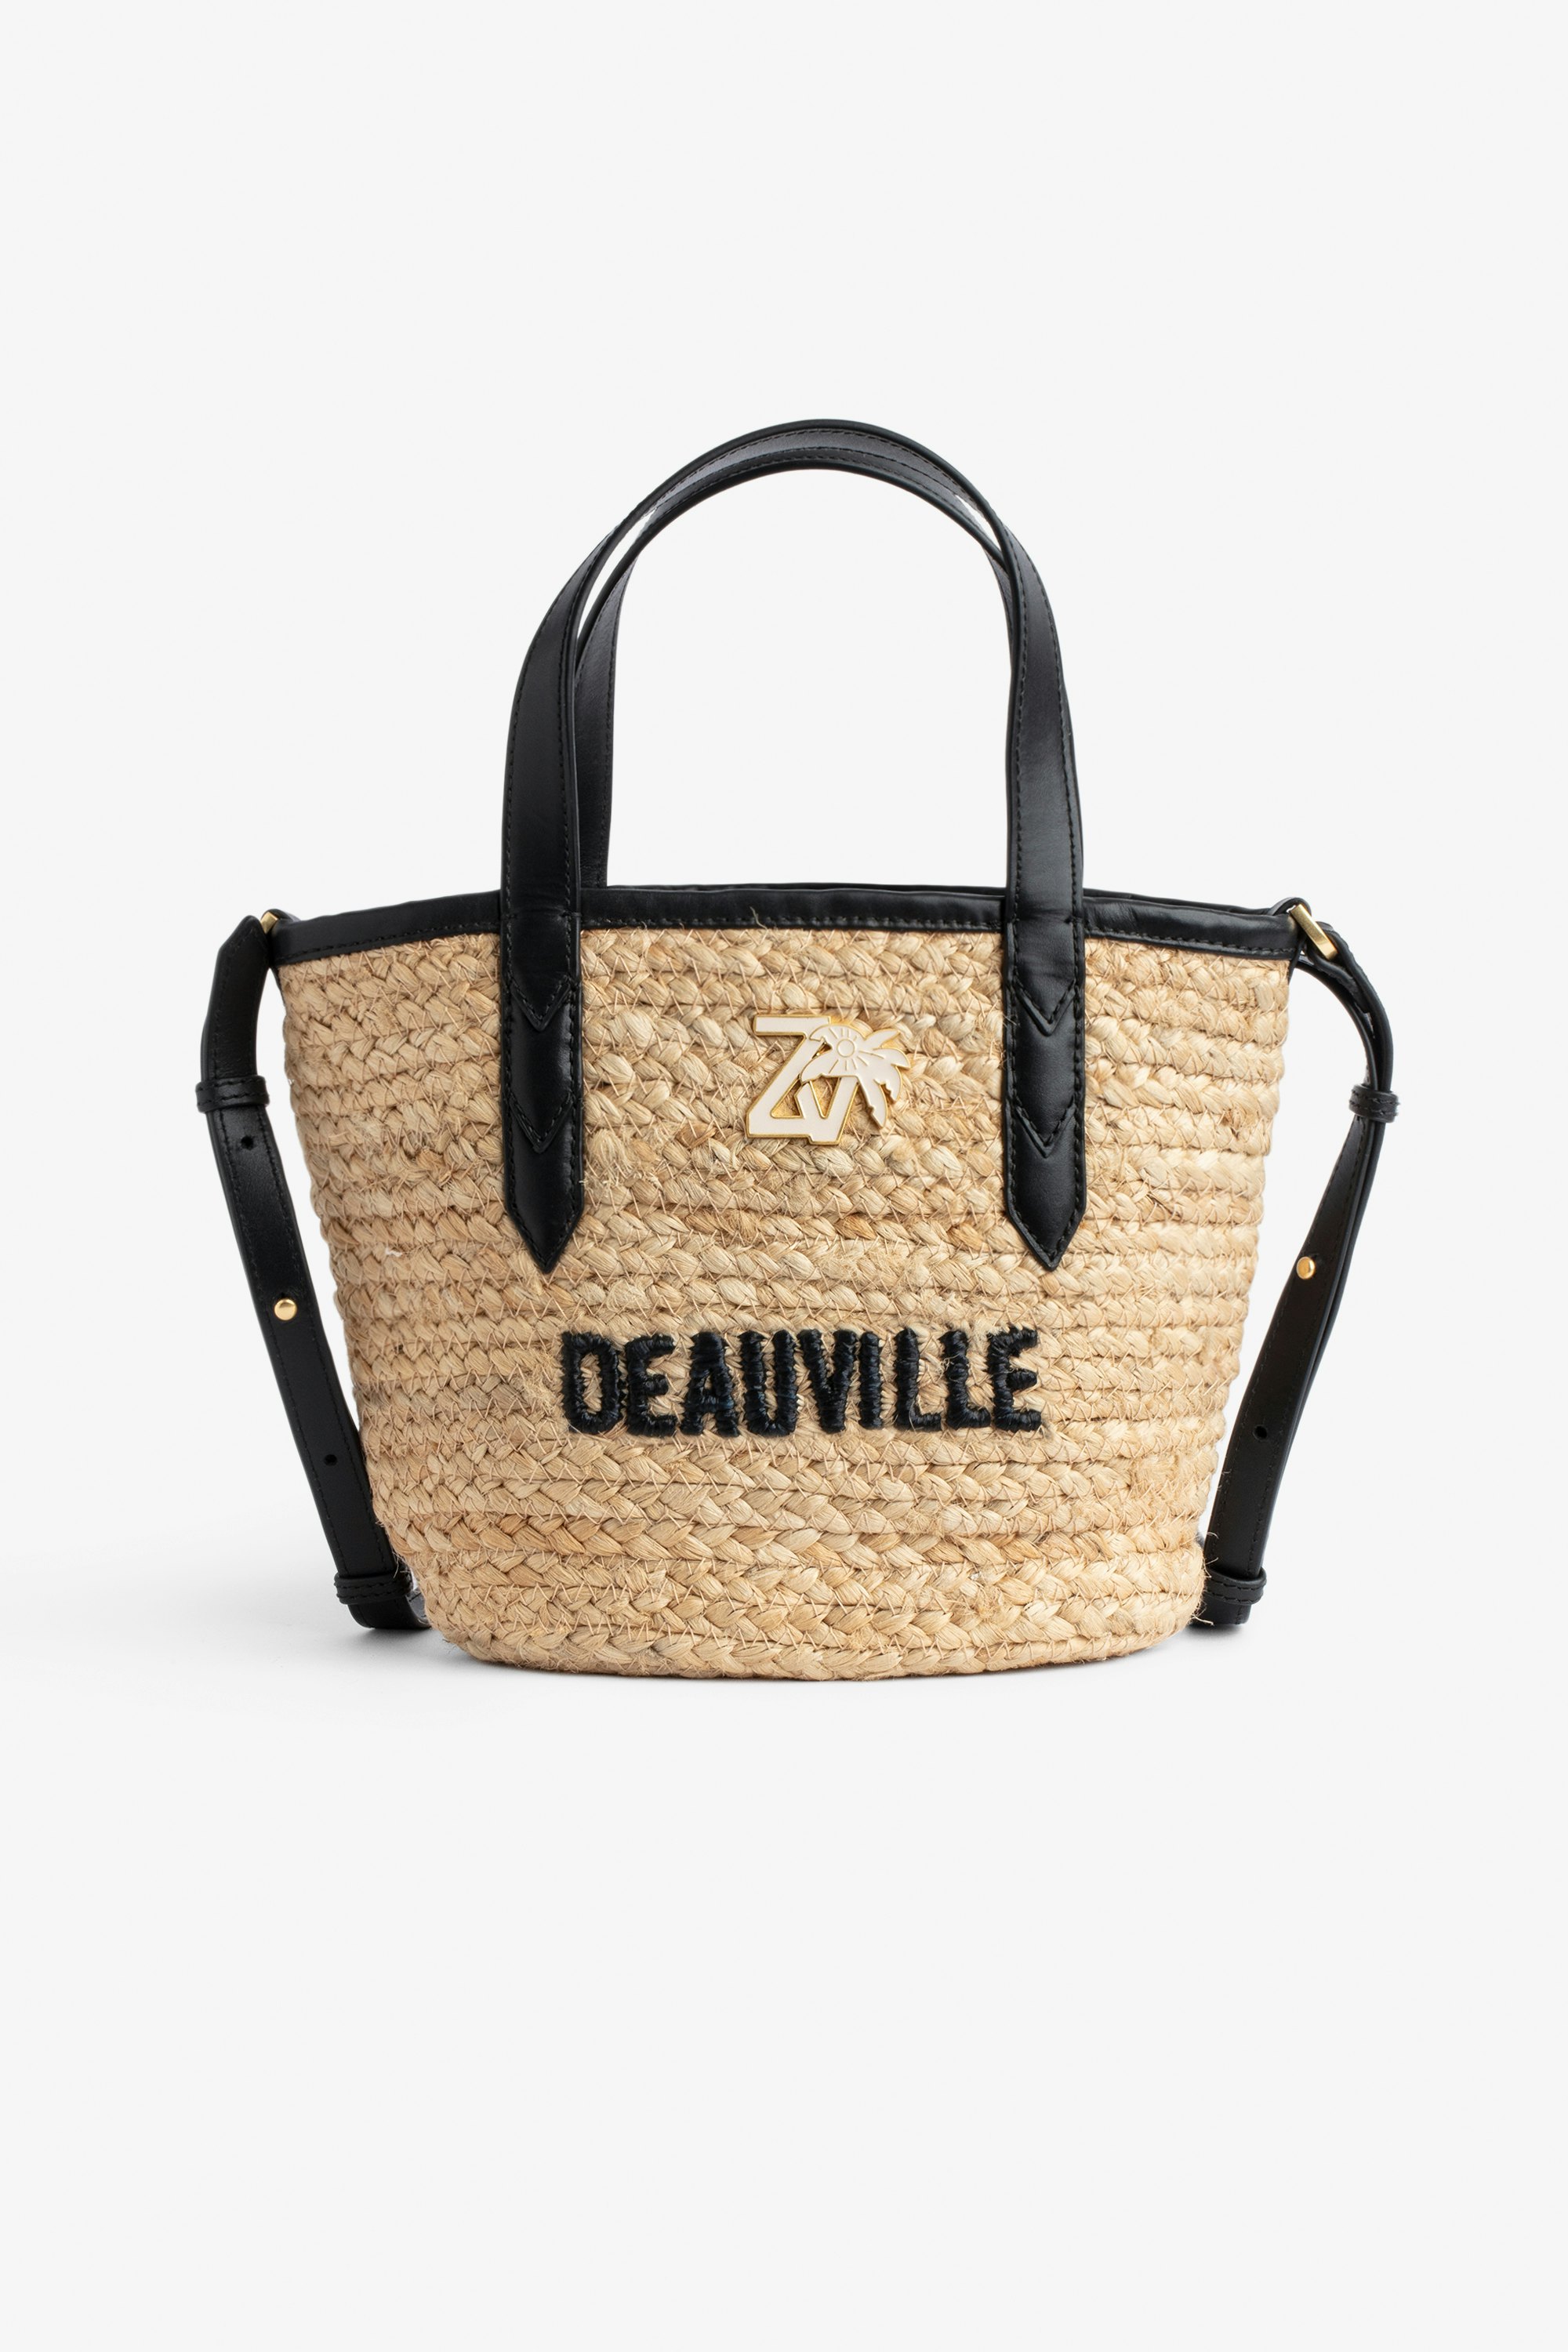 Borsa Le Baby Beach Bag - Borsa in paglia con tracolla in pelle nera, con ricamo "Deauville" e impreziosita da un charm ZV - Donna